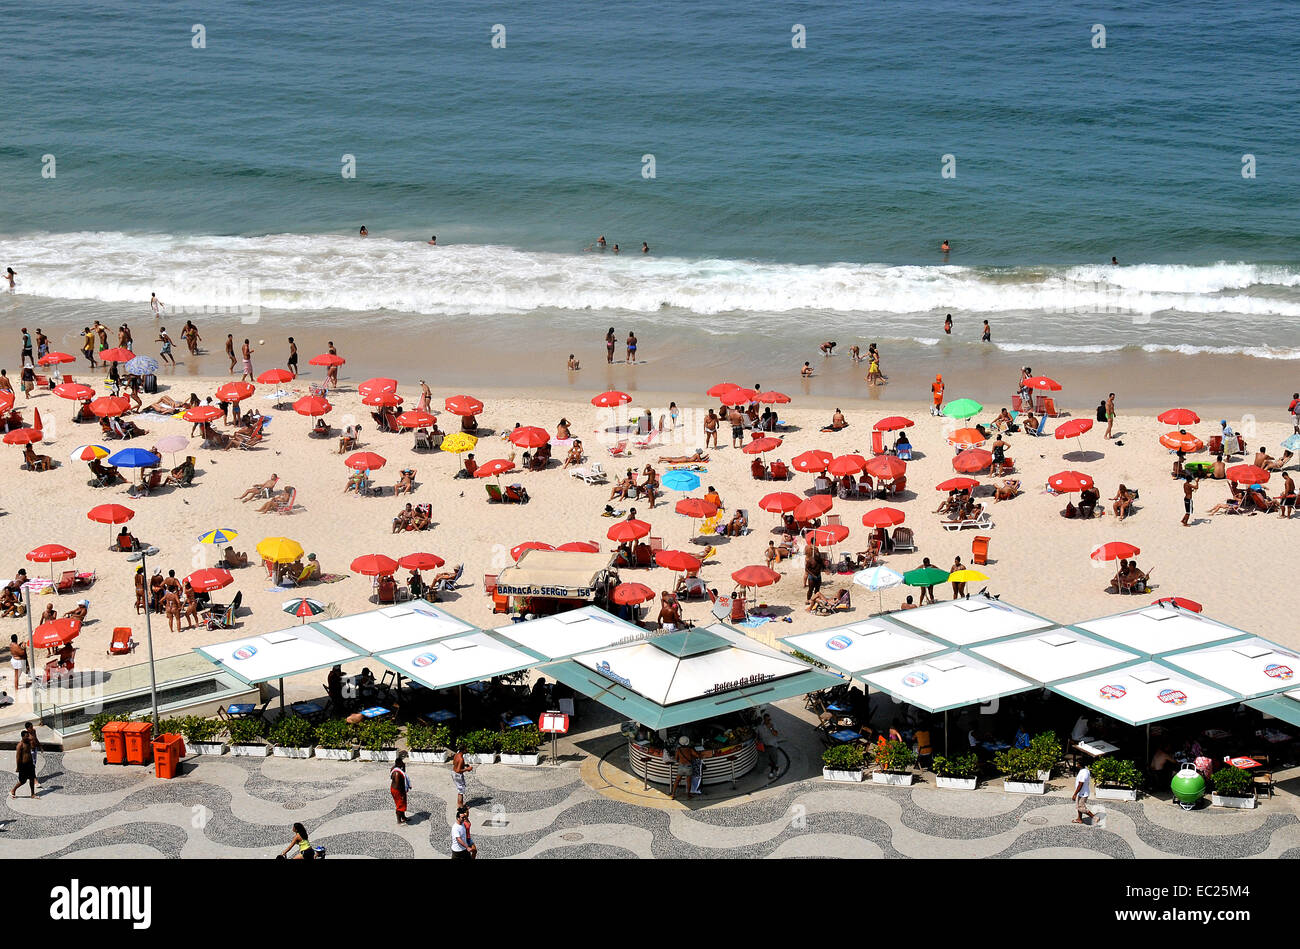 Vue aérienne sur la plage de Copacabana, Rio de Janeiro Brésil Banque D'Images